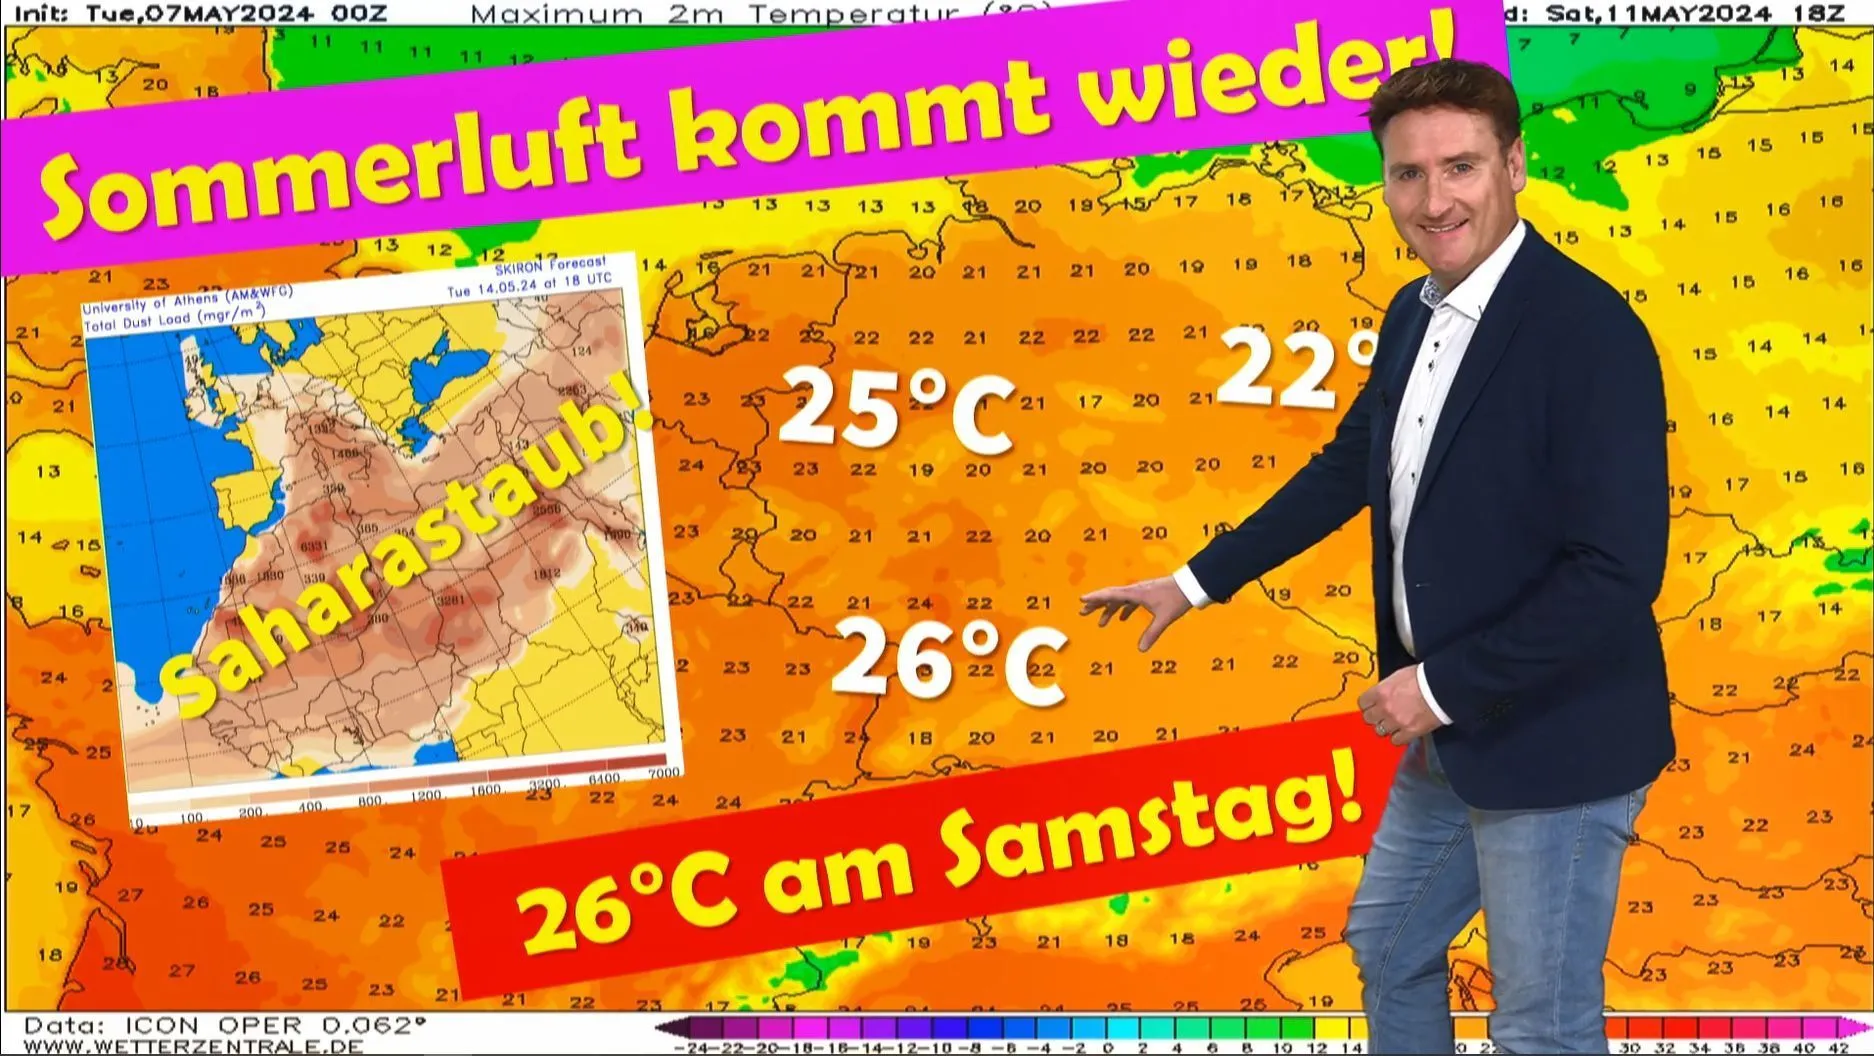 Weerexpert Dominik Jung belooft lenteweer op Hemelvaartsdag, waarna het nog warmer wordt! Tot 26°C volgend weekend.